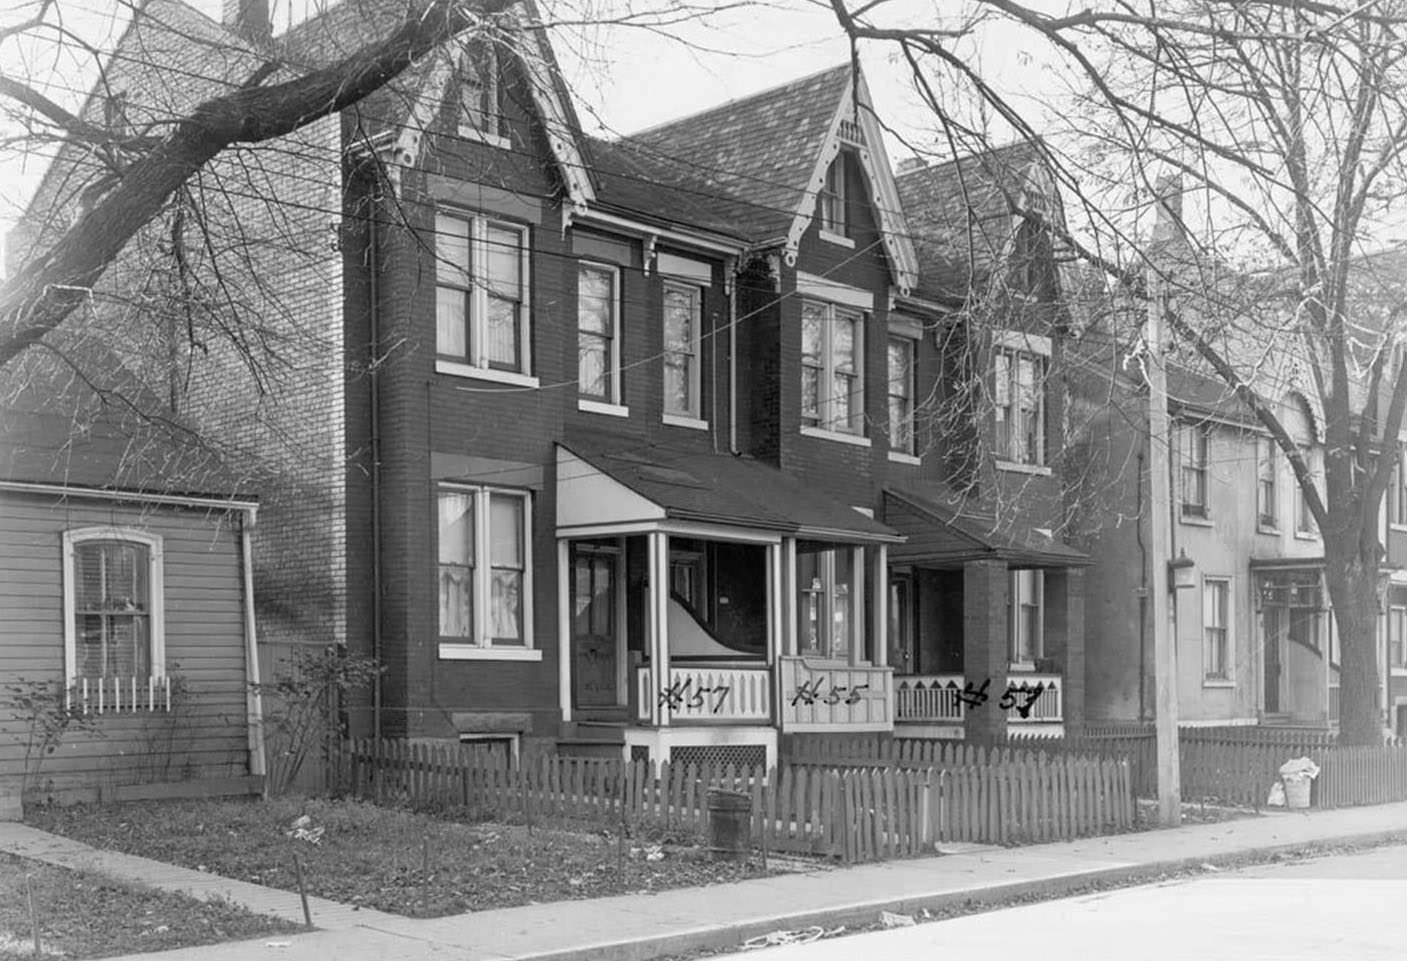 53-57 Oak Street - Nov. 10, 1947